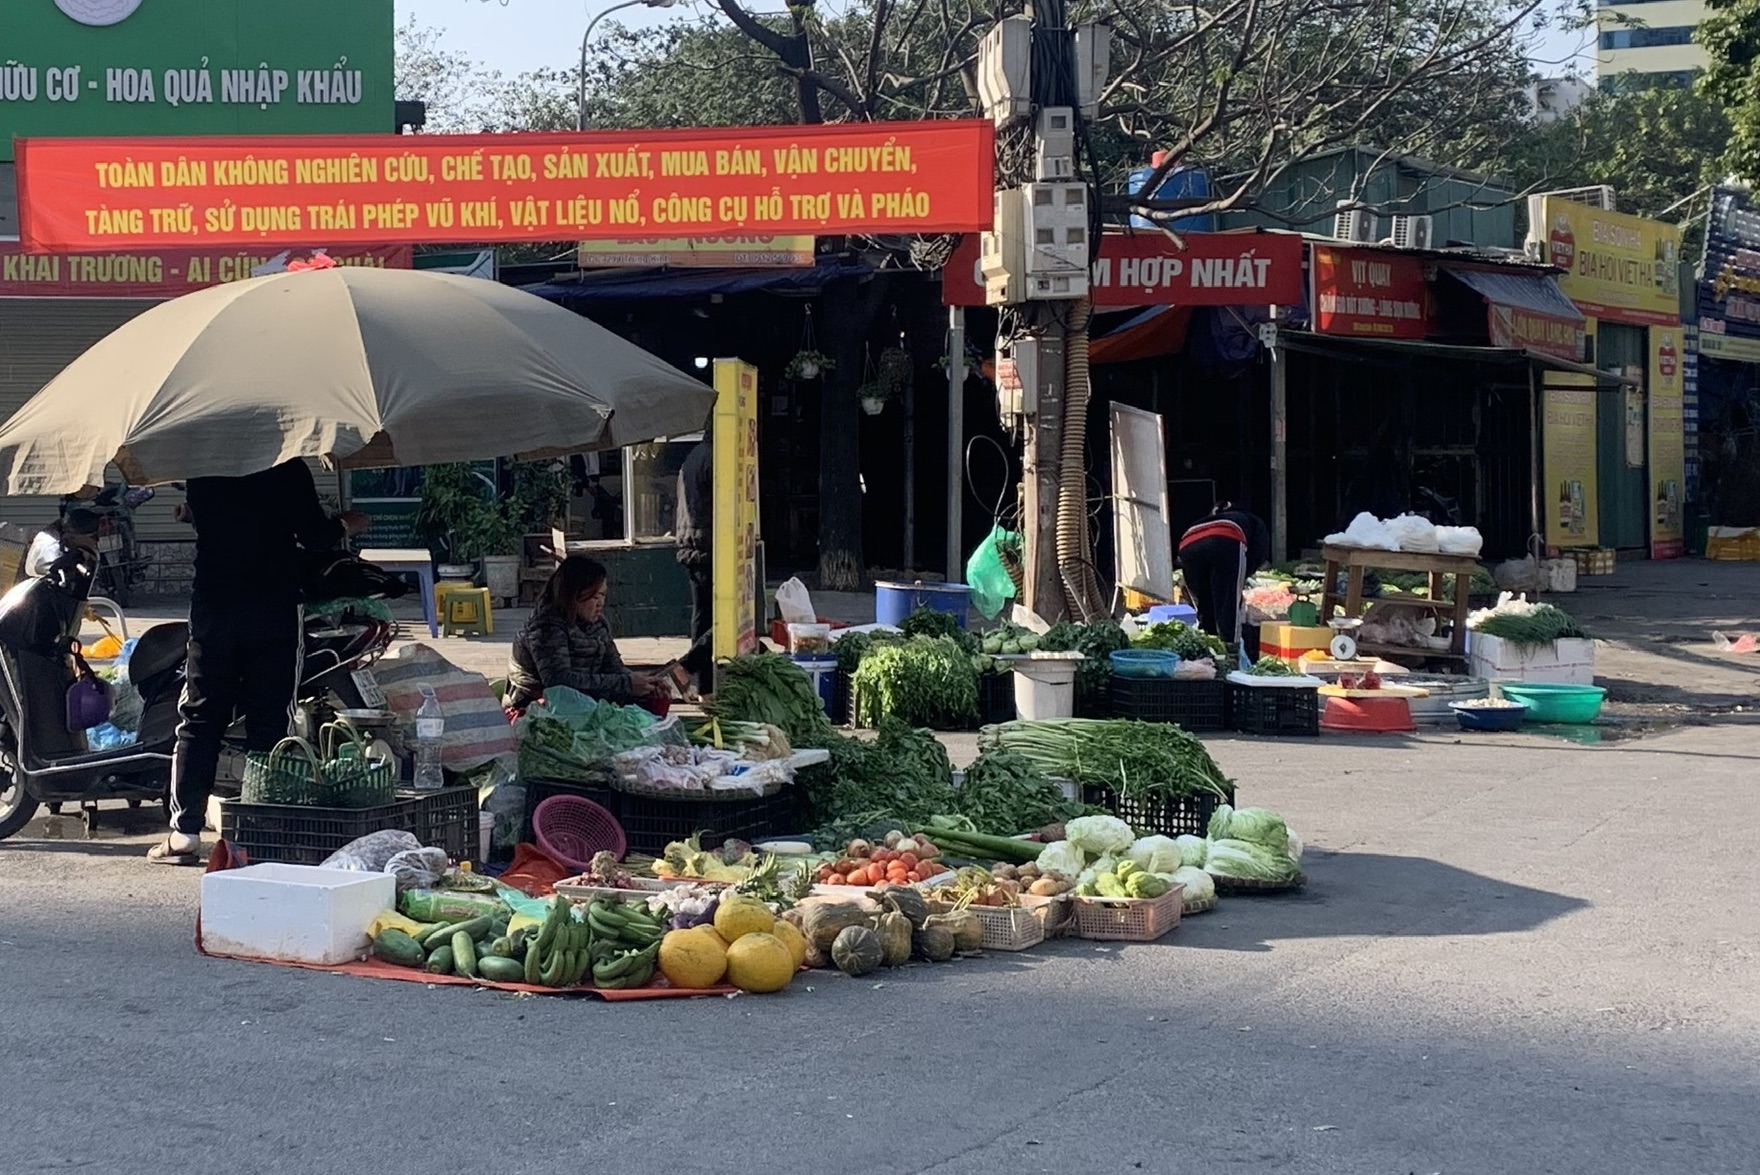 Tiểu thương bày bán hàng ngay bên ngoài cổng chợ Hợp Nhất (phường Yên Hoà, quận Cầu Giấy). Ảnh: T.Vương